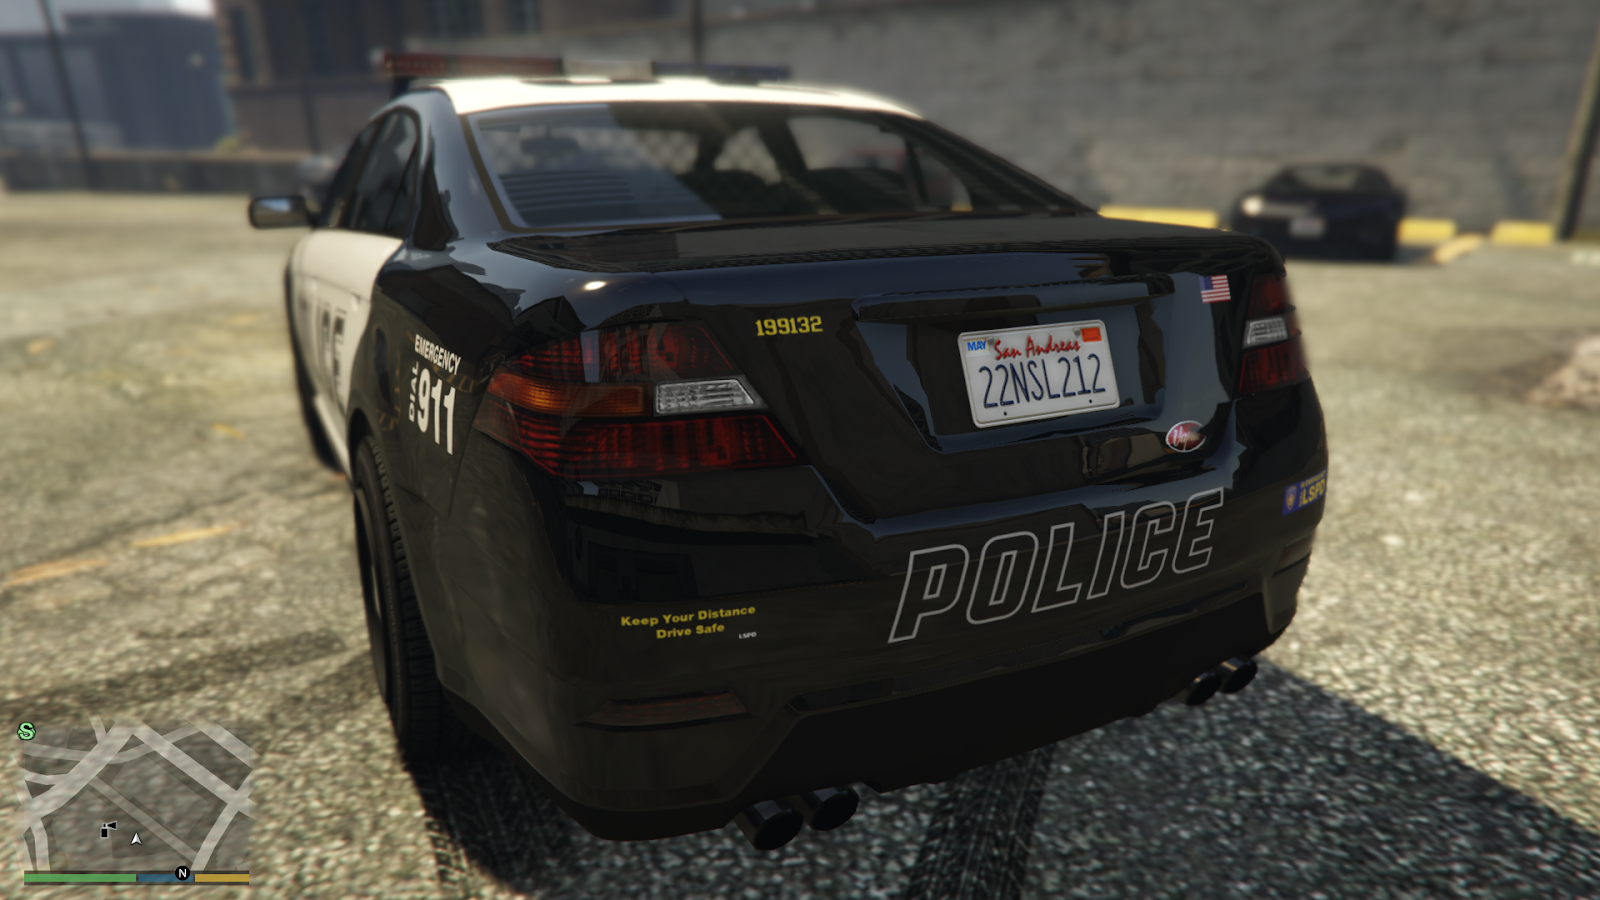 Police Cruiser(Interceptor) in GTA V